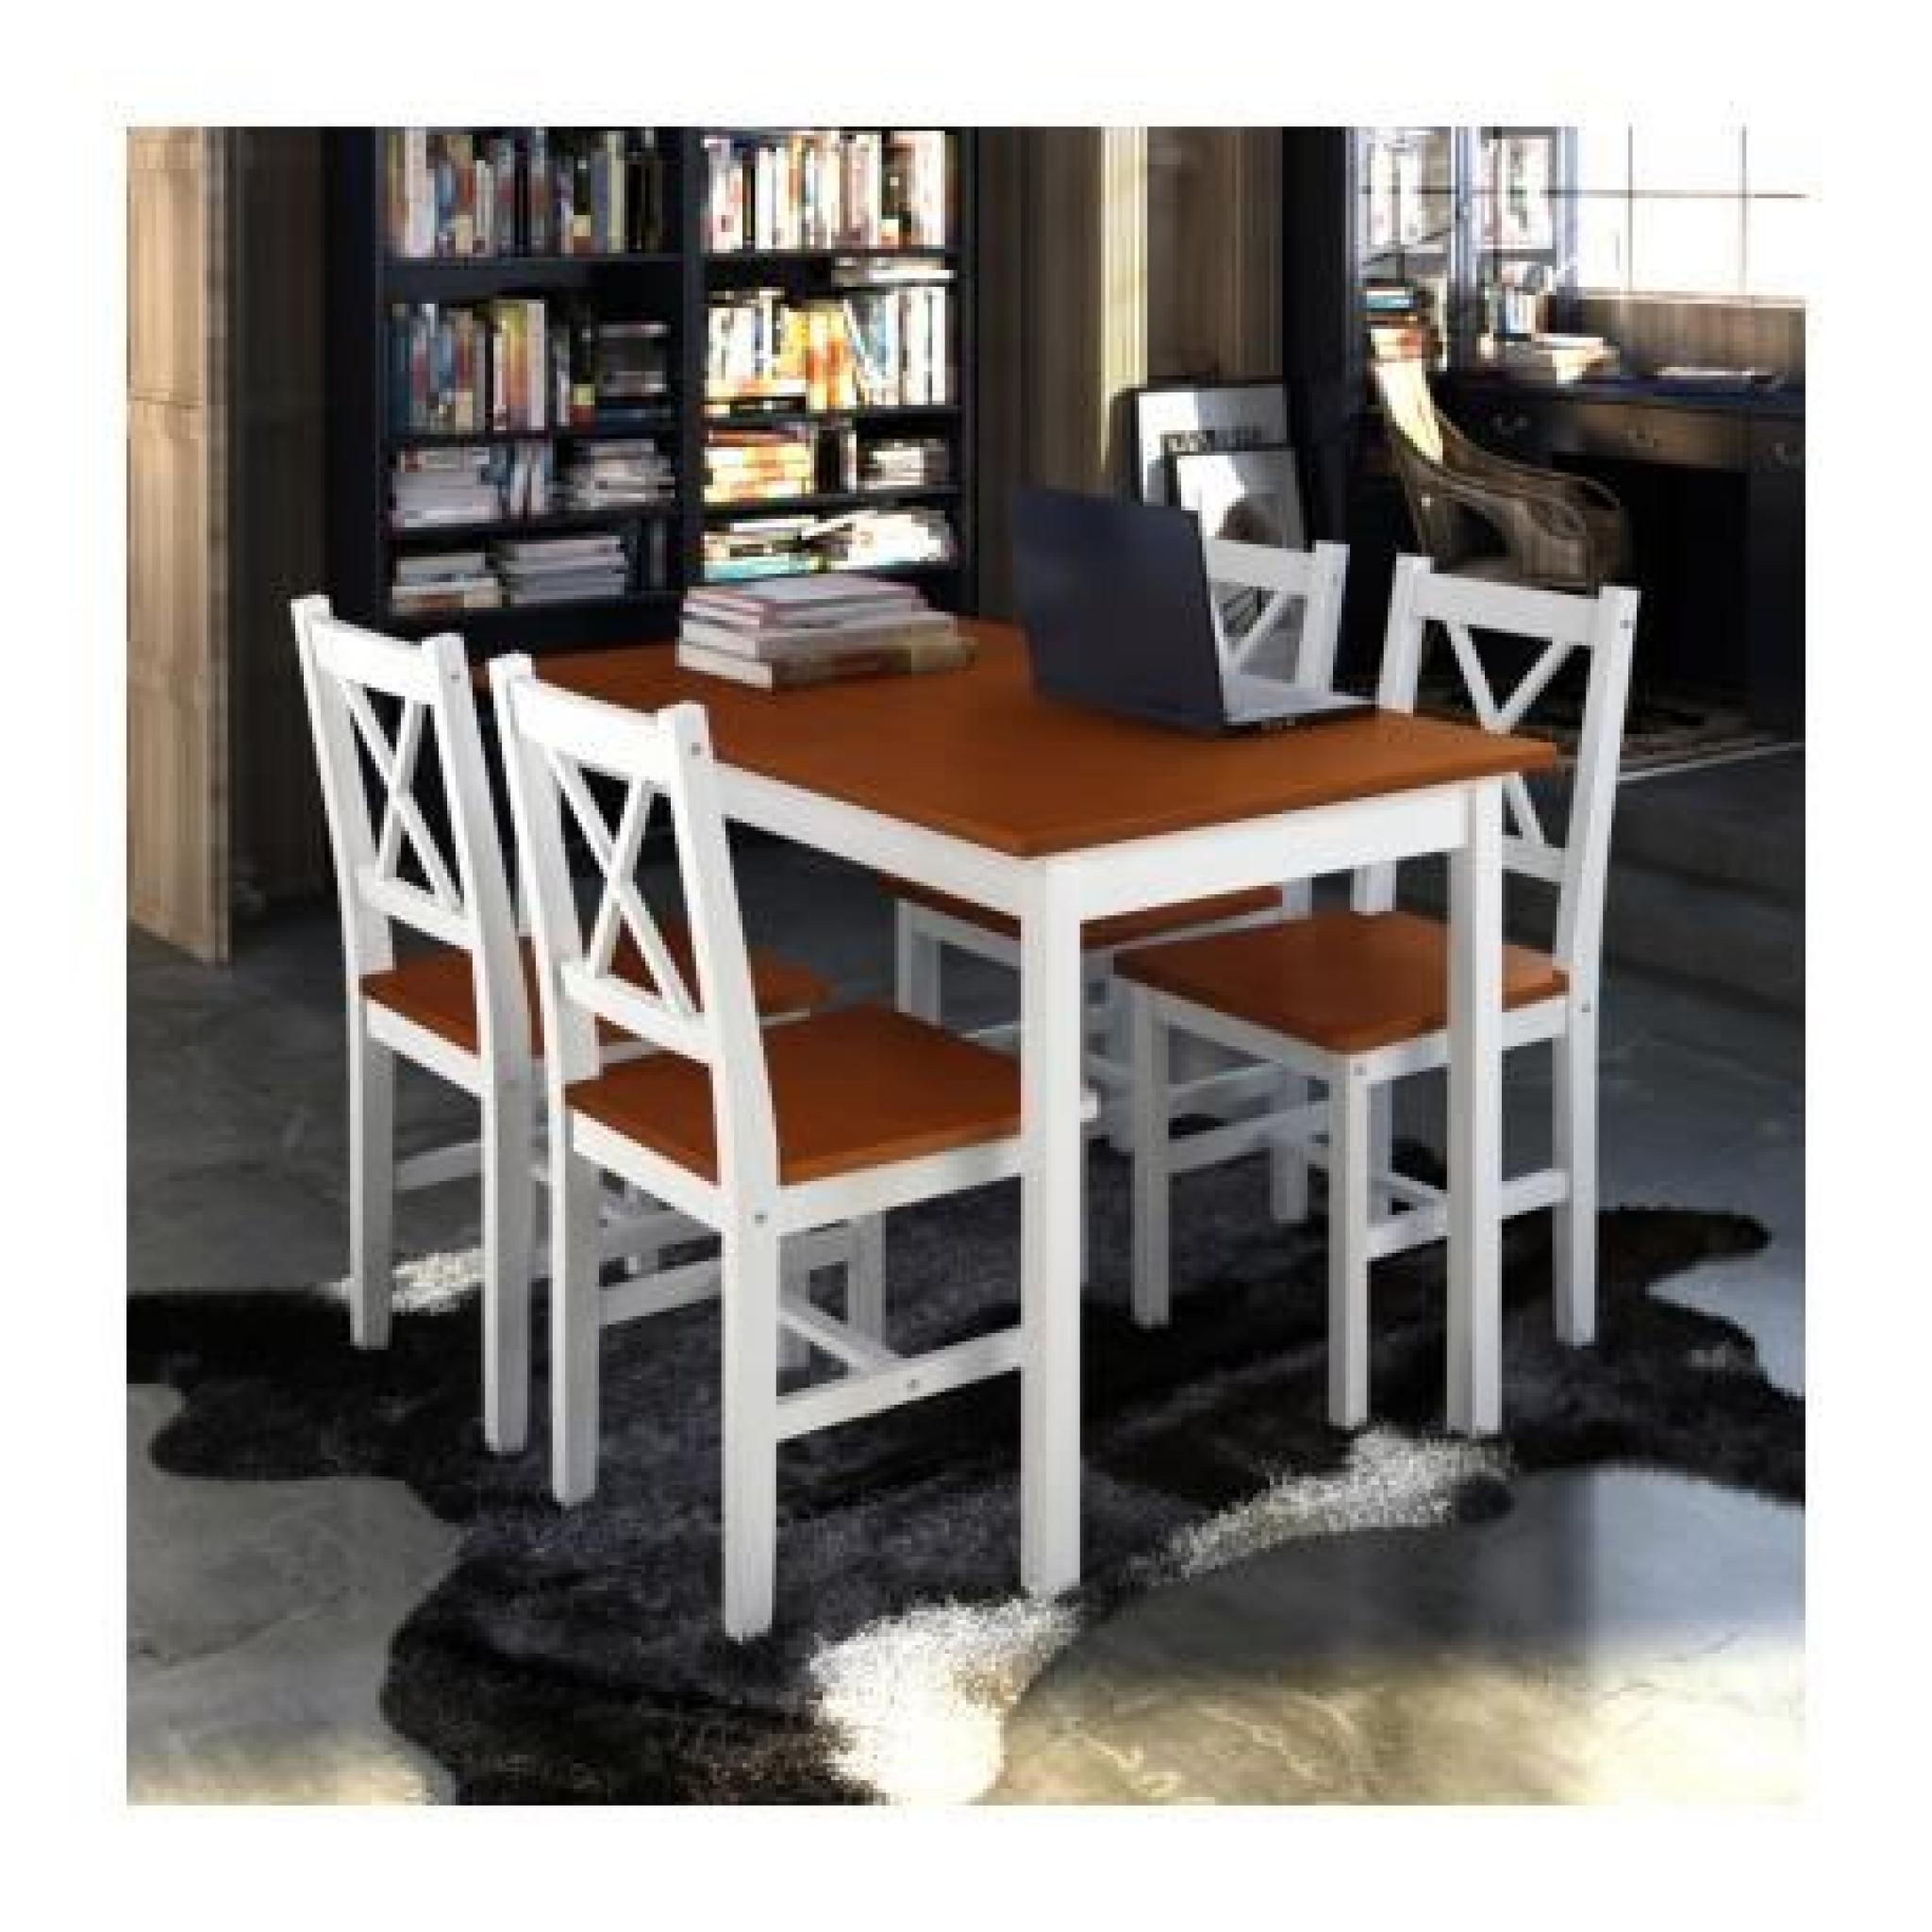 1 ensemble Table en bois + 4 chaises Couleur Marron